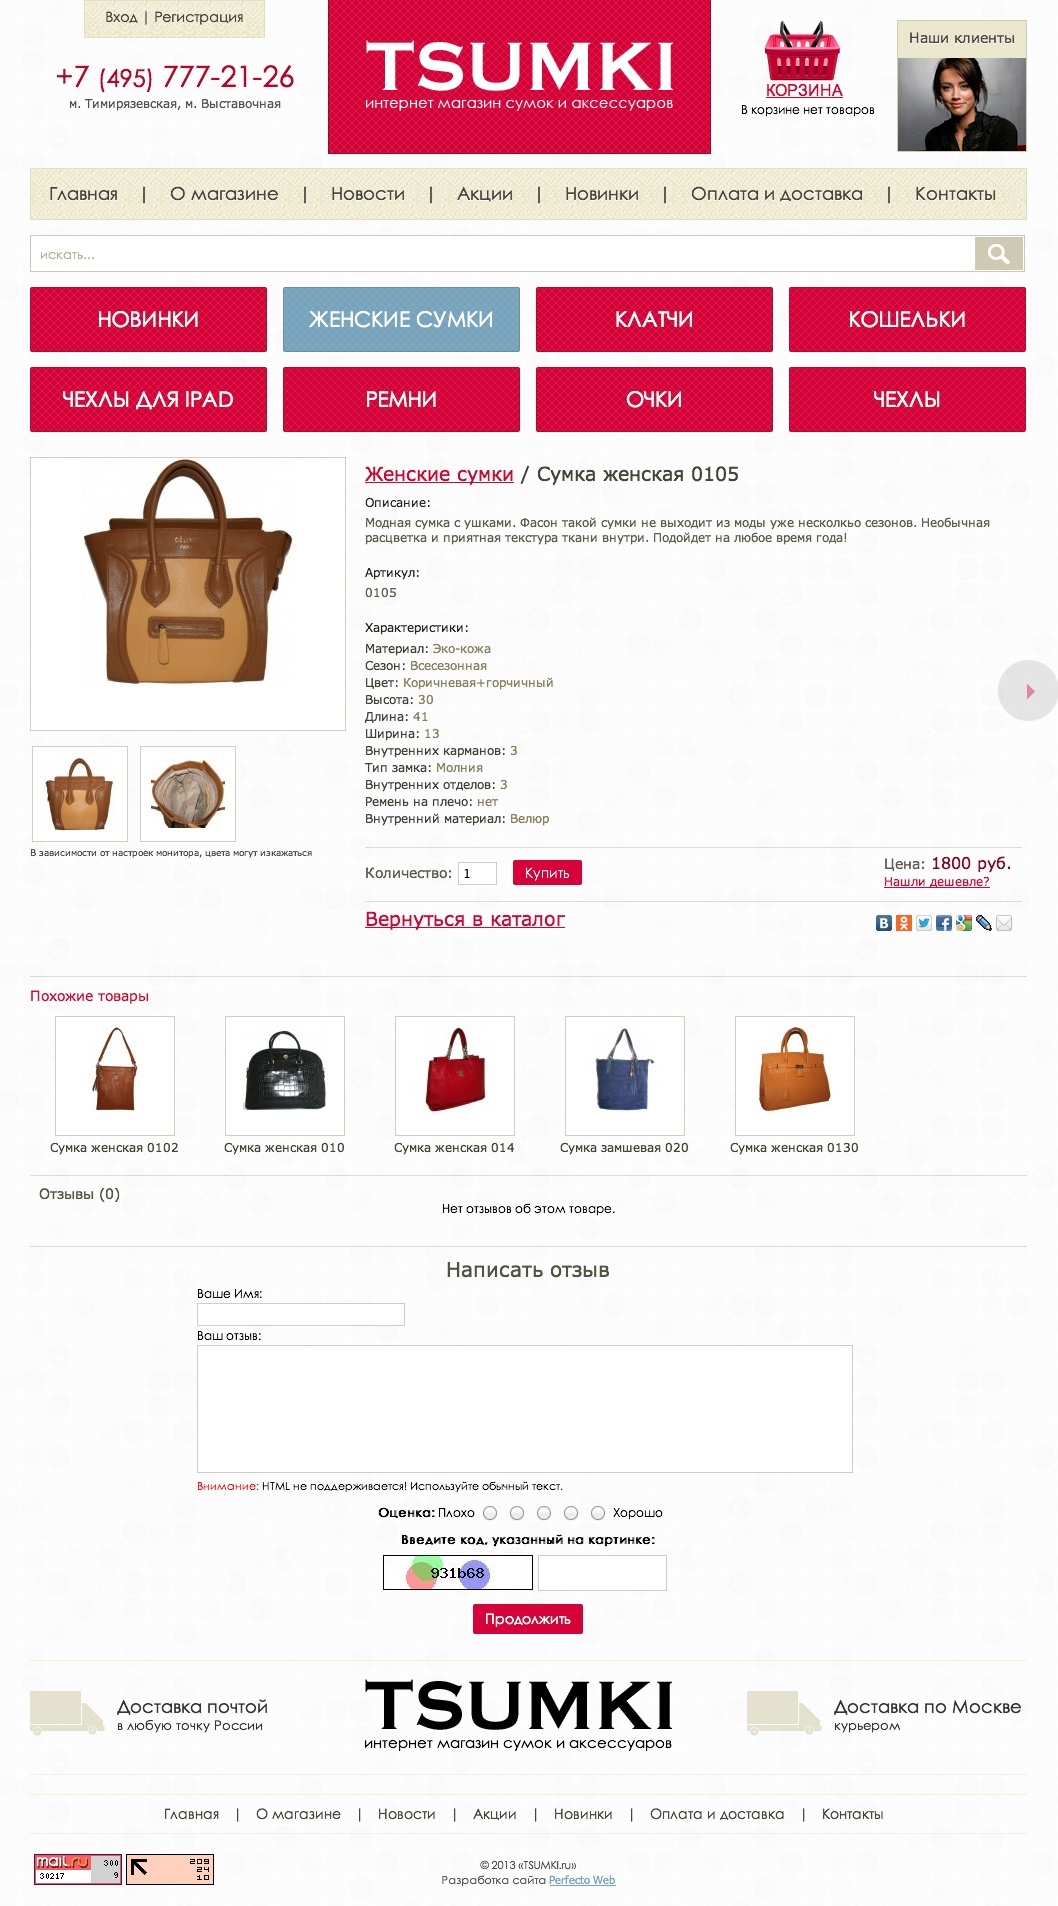 Tsumki - интернет магазин сумок и аксессуаров №3- Страница подробного описания товара